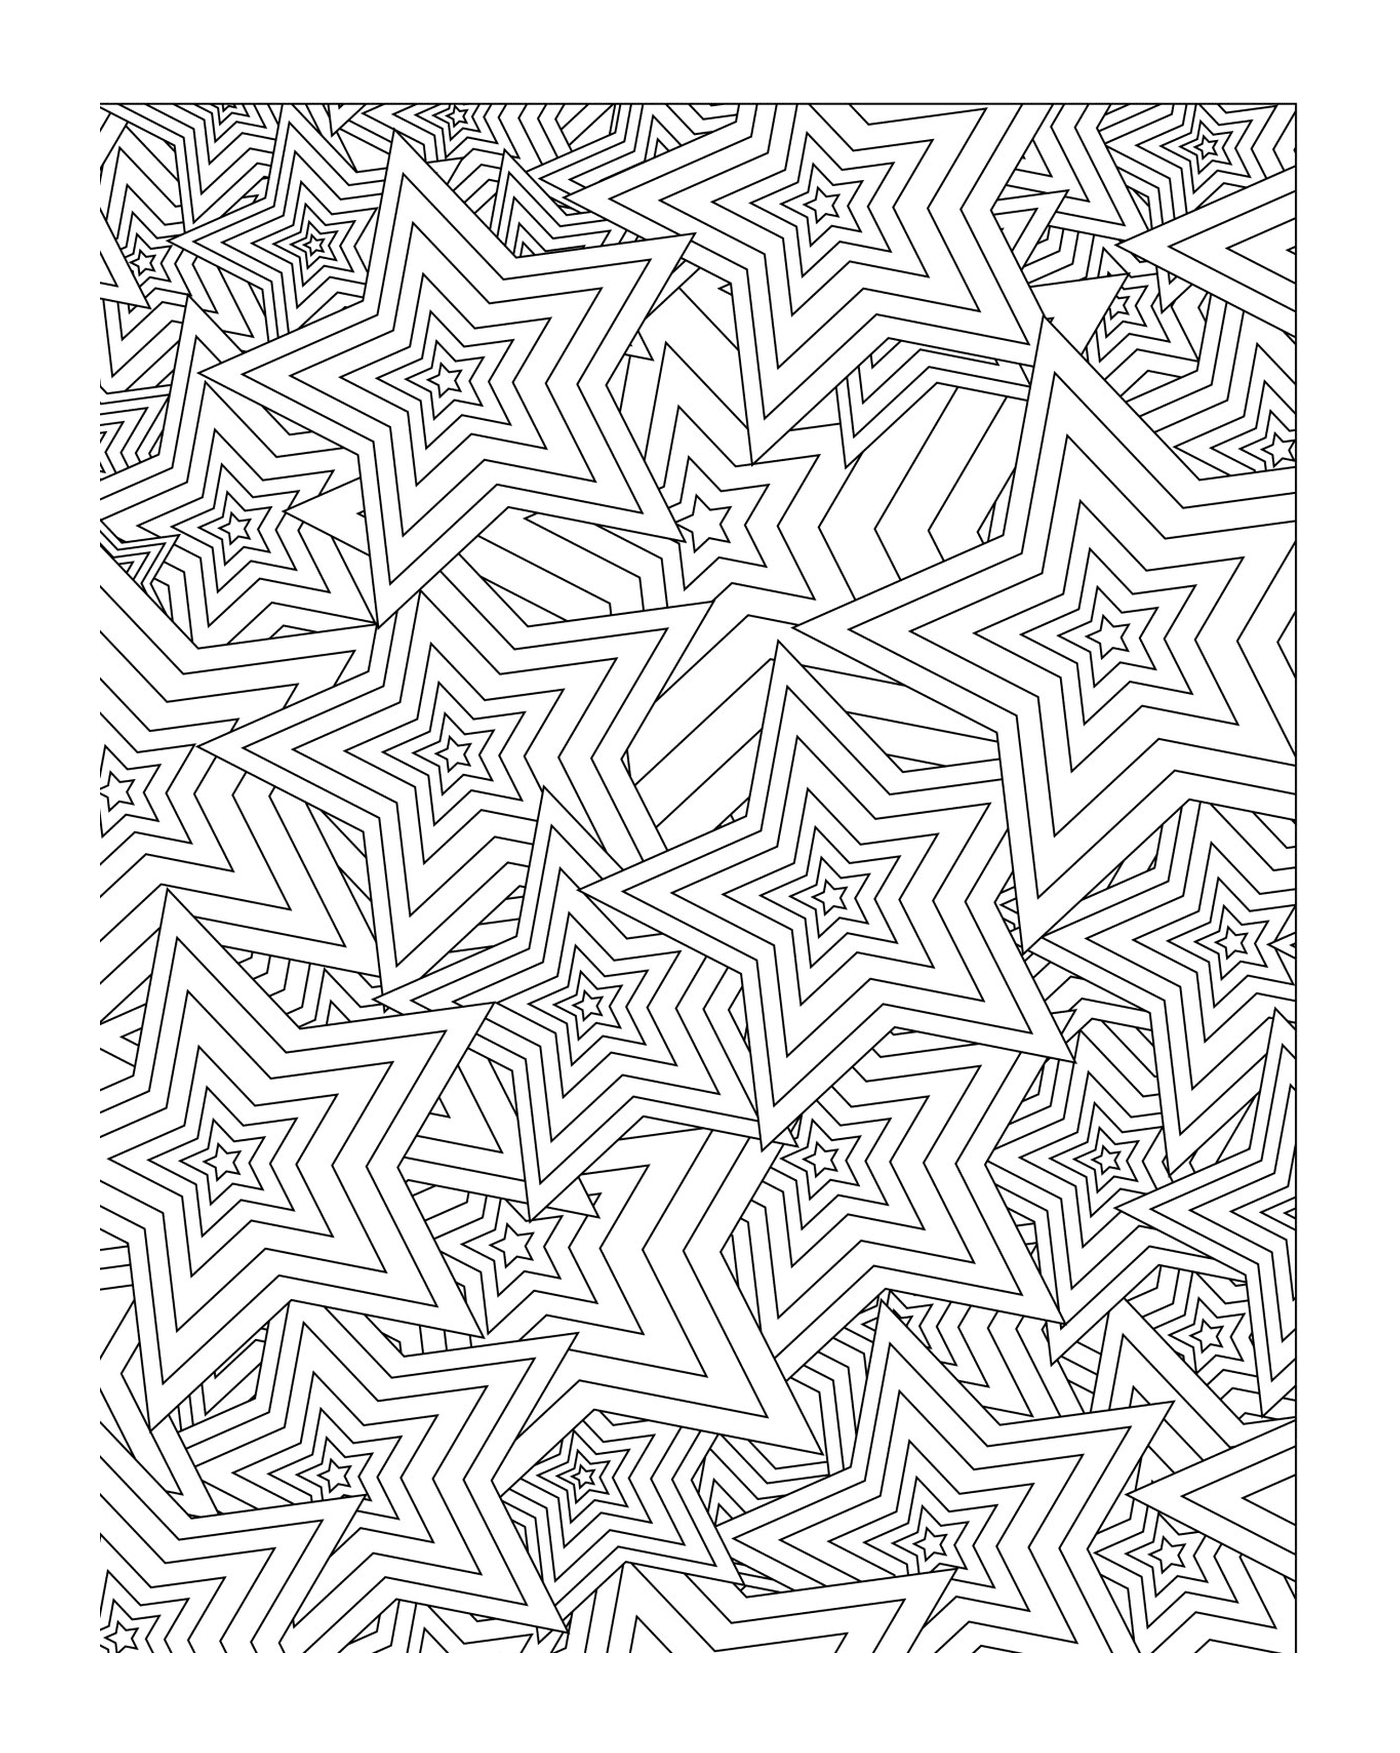  Um padrão de estrela em forma de mandala 